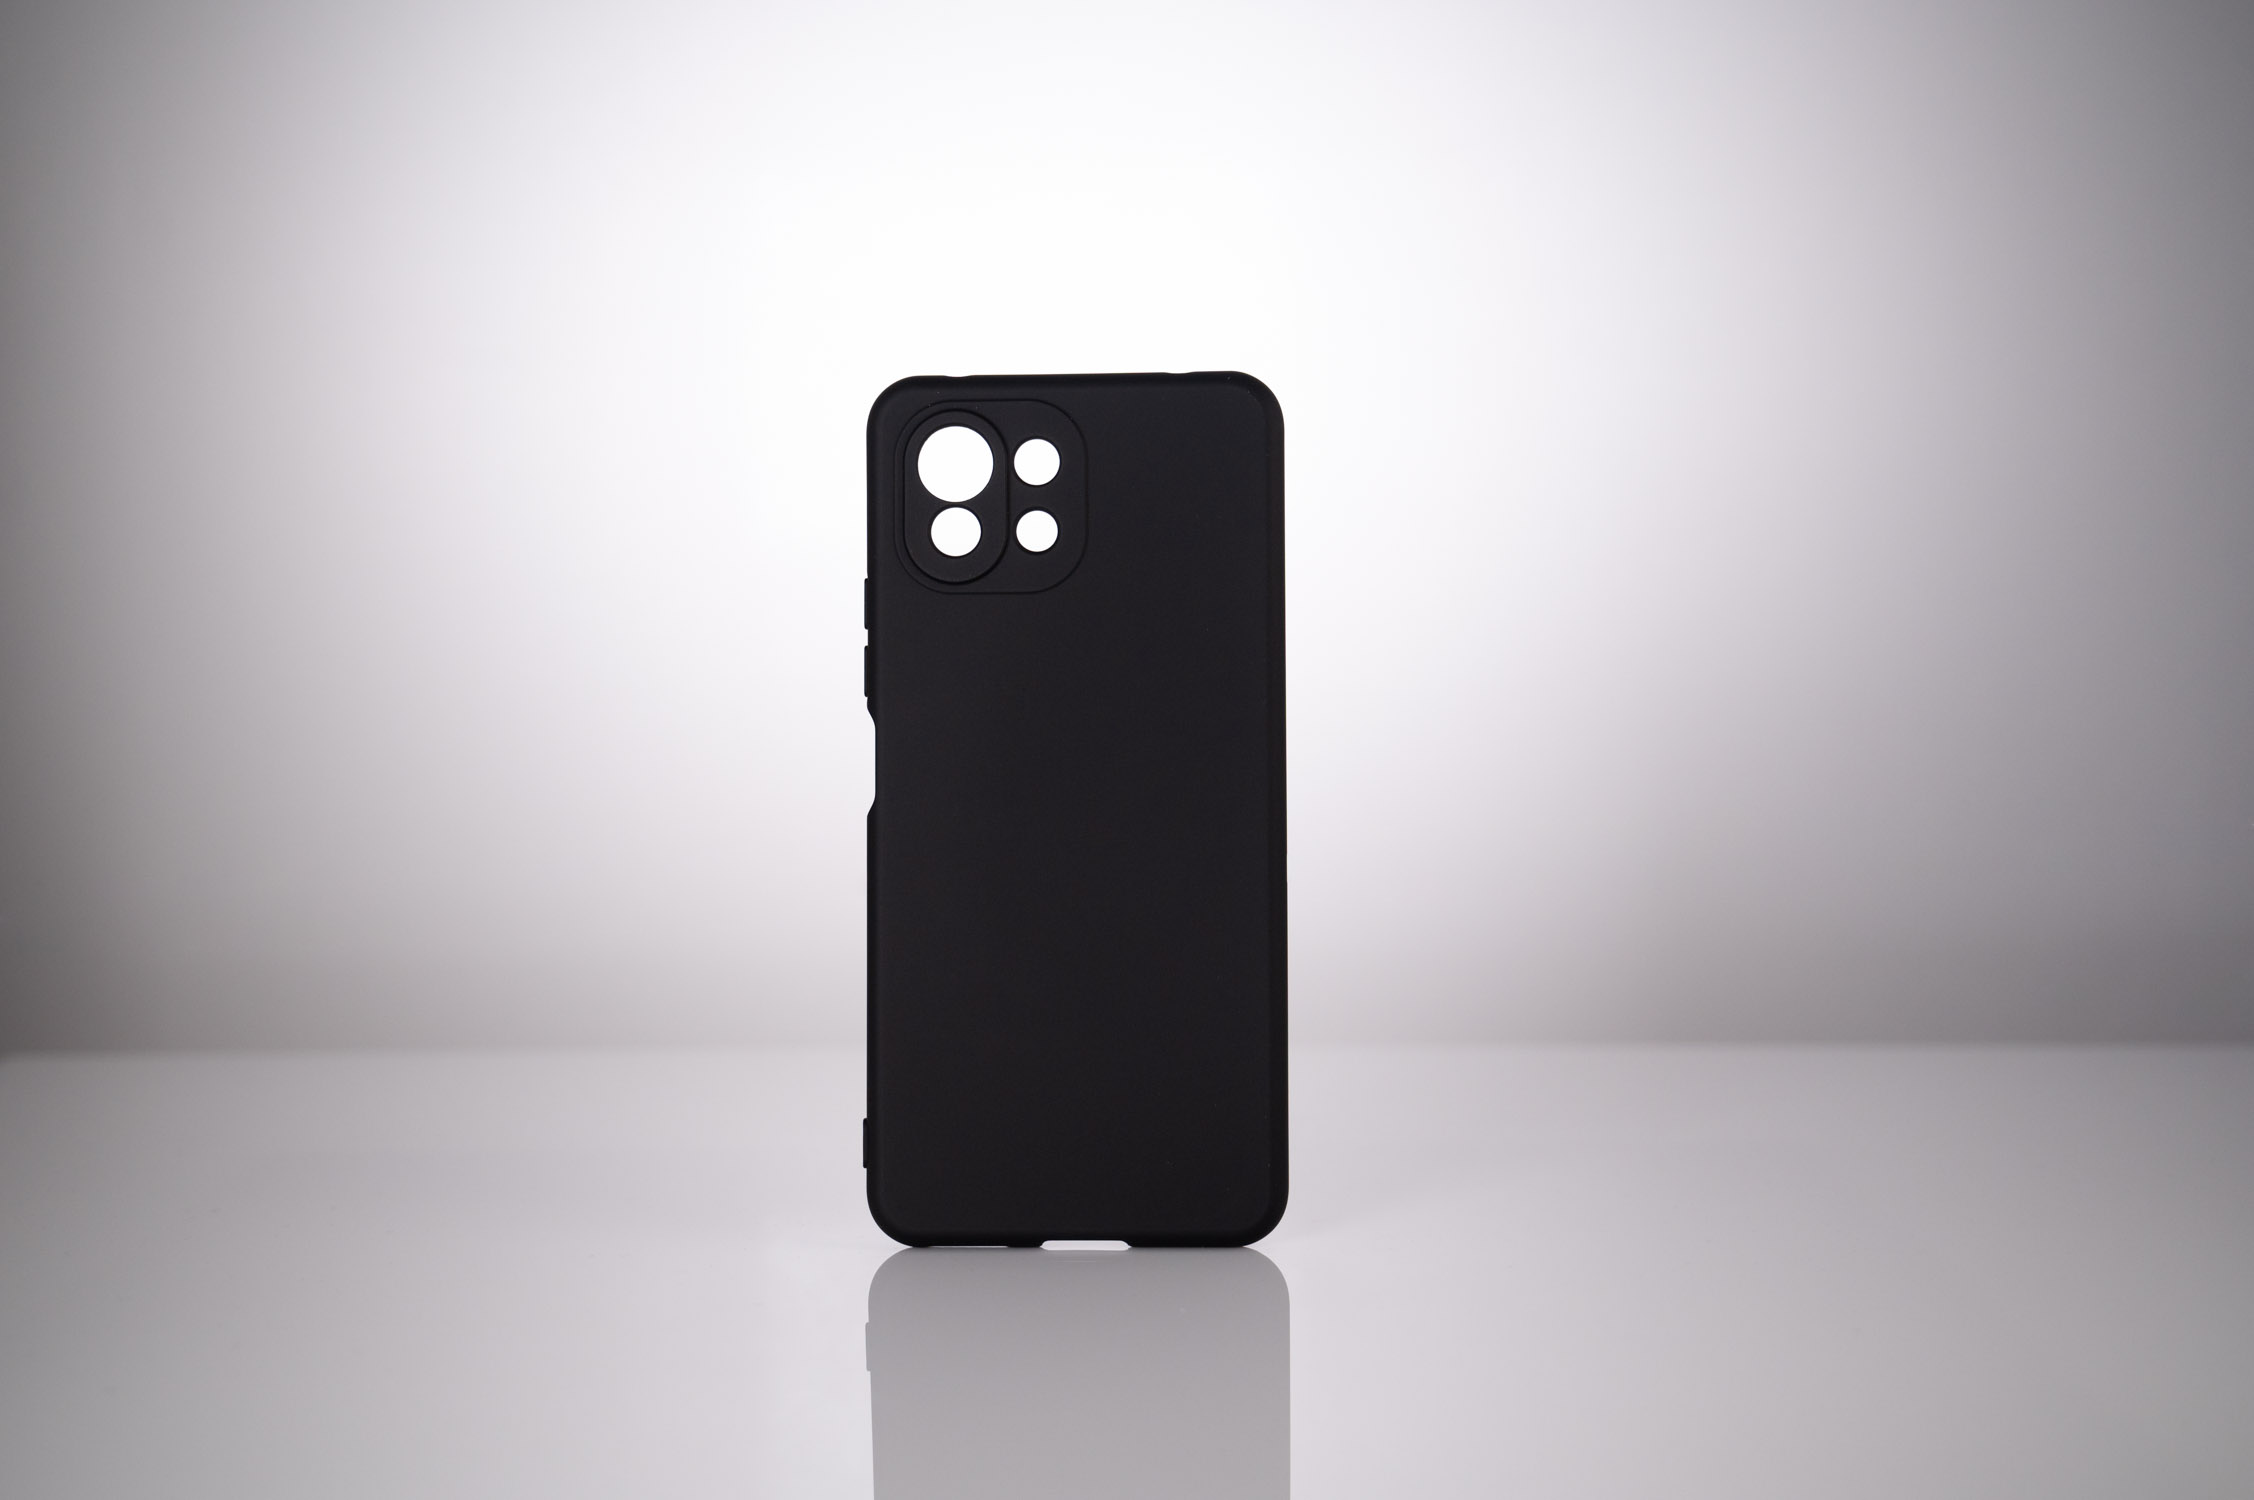 HUSA SMARTPHONE Spacer pentru Xiaomi Mi 11 Lite 5G, grosime 1.5mm, material flexibil TPU, negru "SPPC-XI-MI-11L5G-TPU" thumb